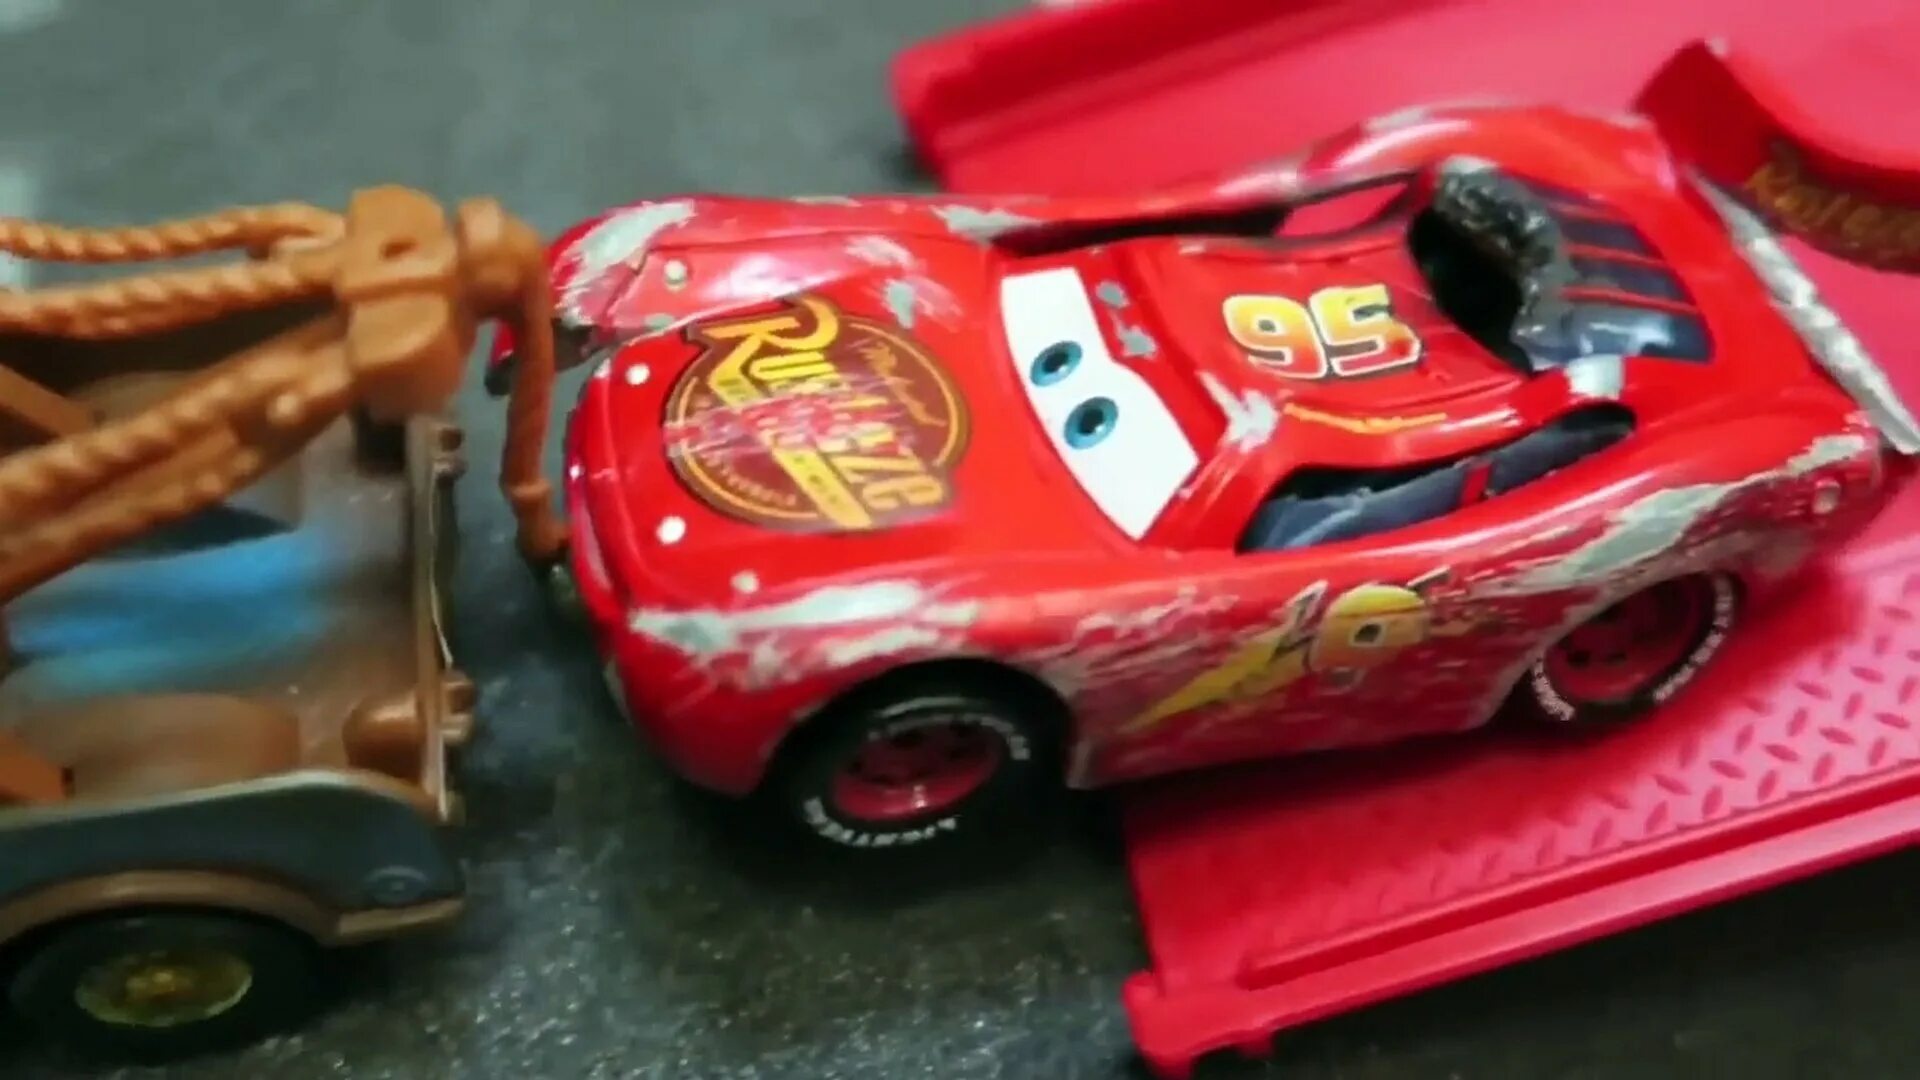 Cars 3 Lightning MCQUEEN crash. Cars 3 Lightning MCQUEEN Rust Eze Toy. Cars 3 MCQUEEN crash Rust Eze. Cars 3 Lightning MCQUEEN crash Toys.